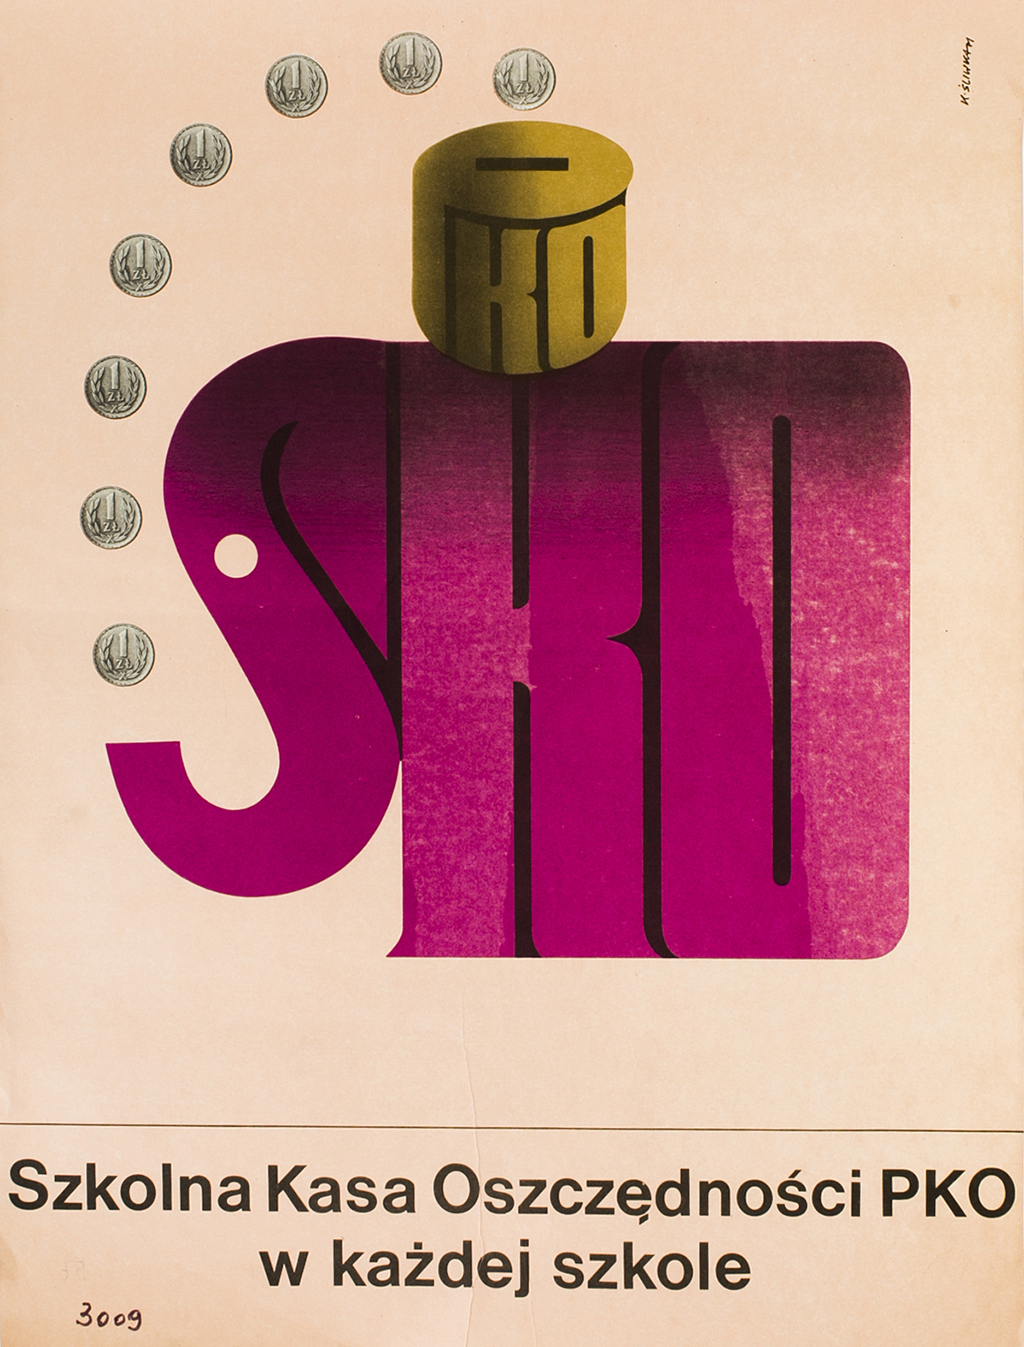 Plakat promujący SKO przygotowany przez Karola Śliwkę